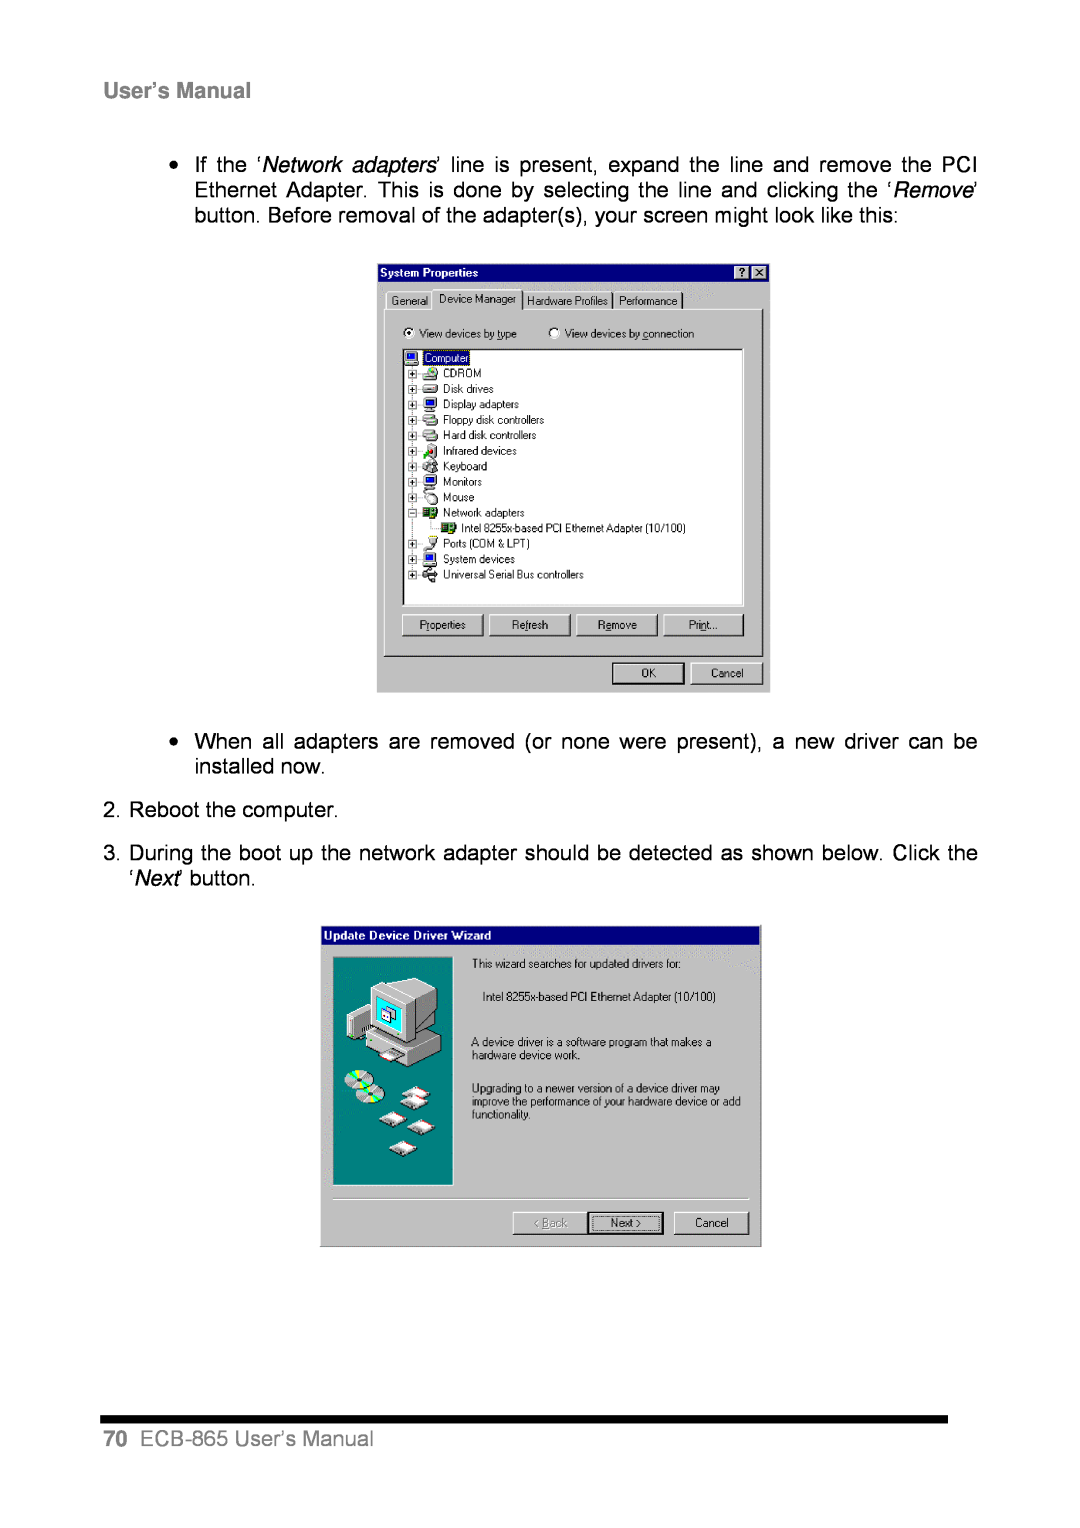 Intel user manual 70ECB-865User’s Manual, Reboot the computer 